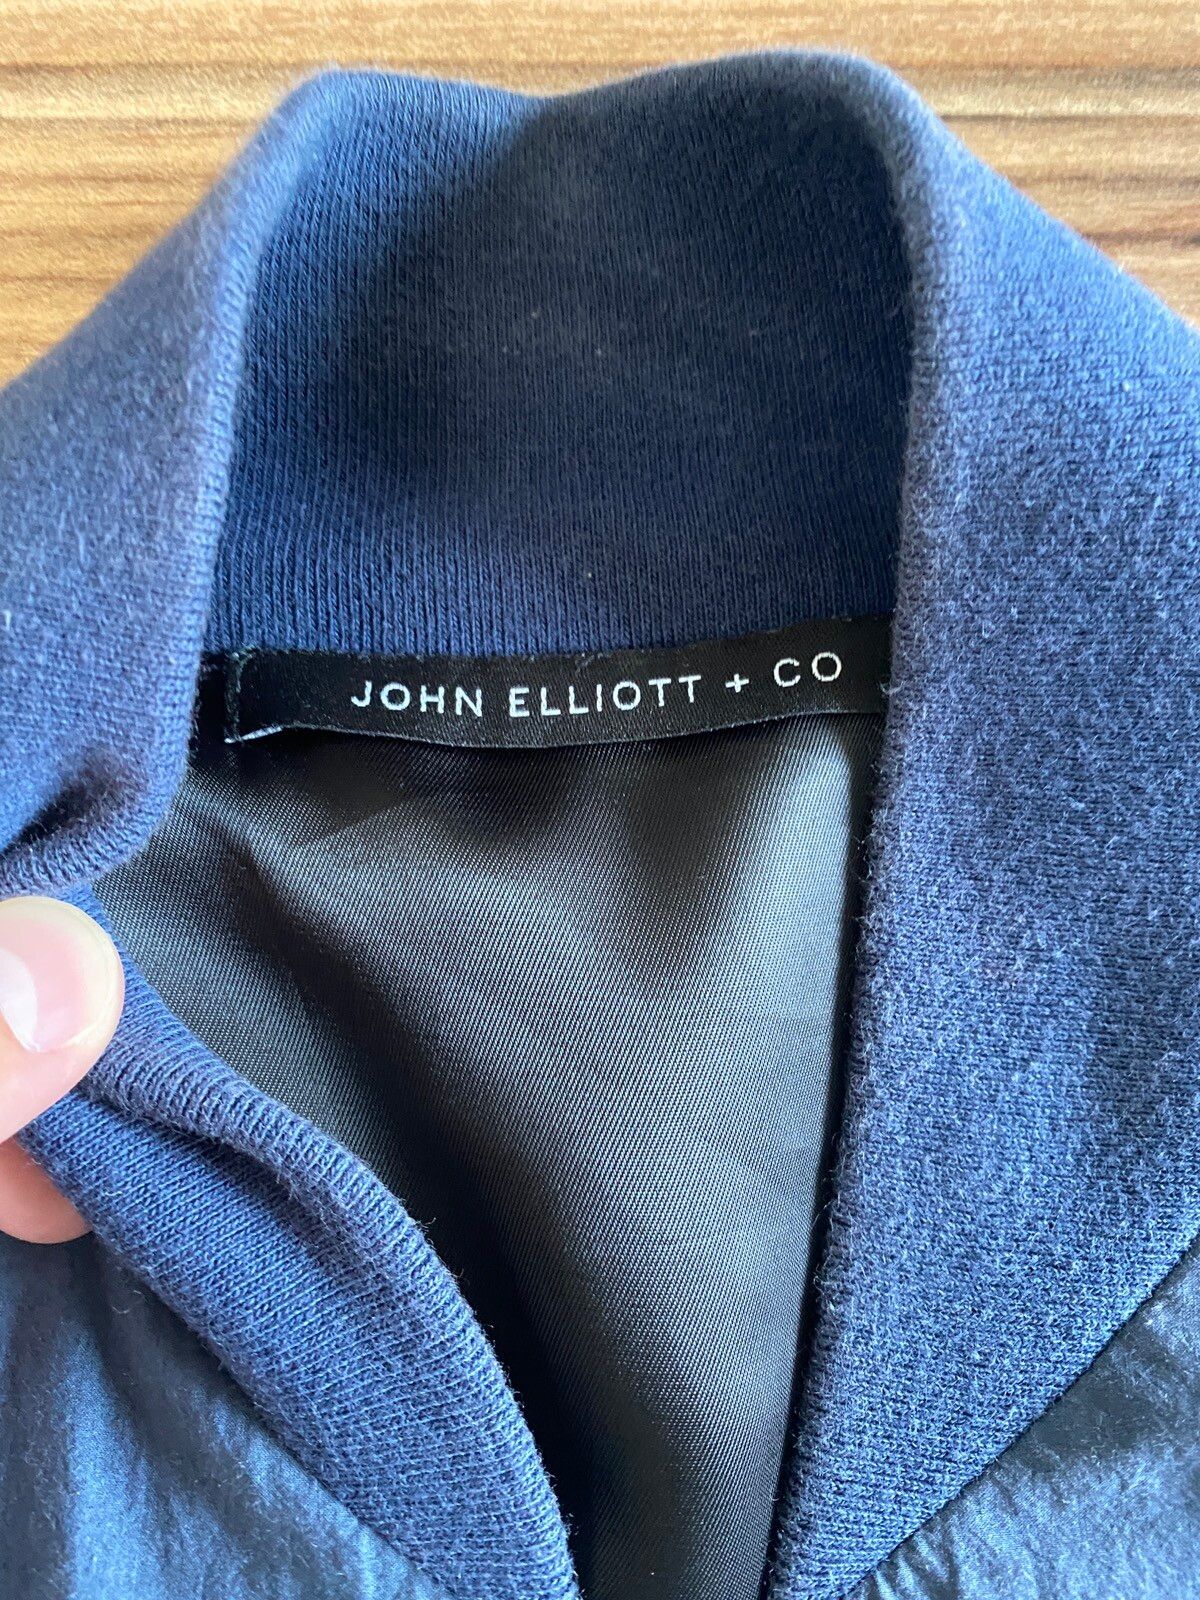 John Elliott John Elliott Bomber Jacket Size US S / EU 44-46 / 1 - 4 Thumbnail